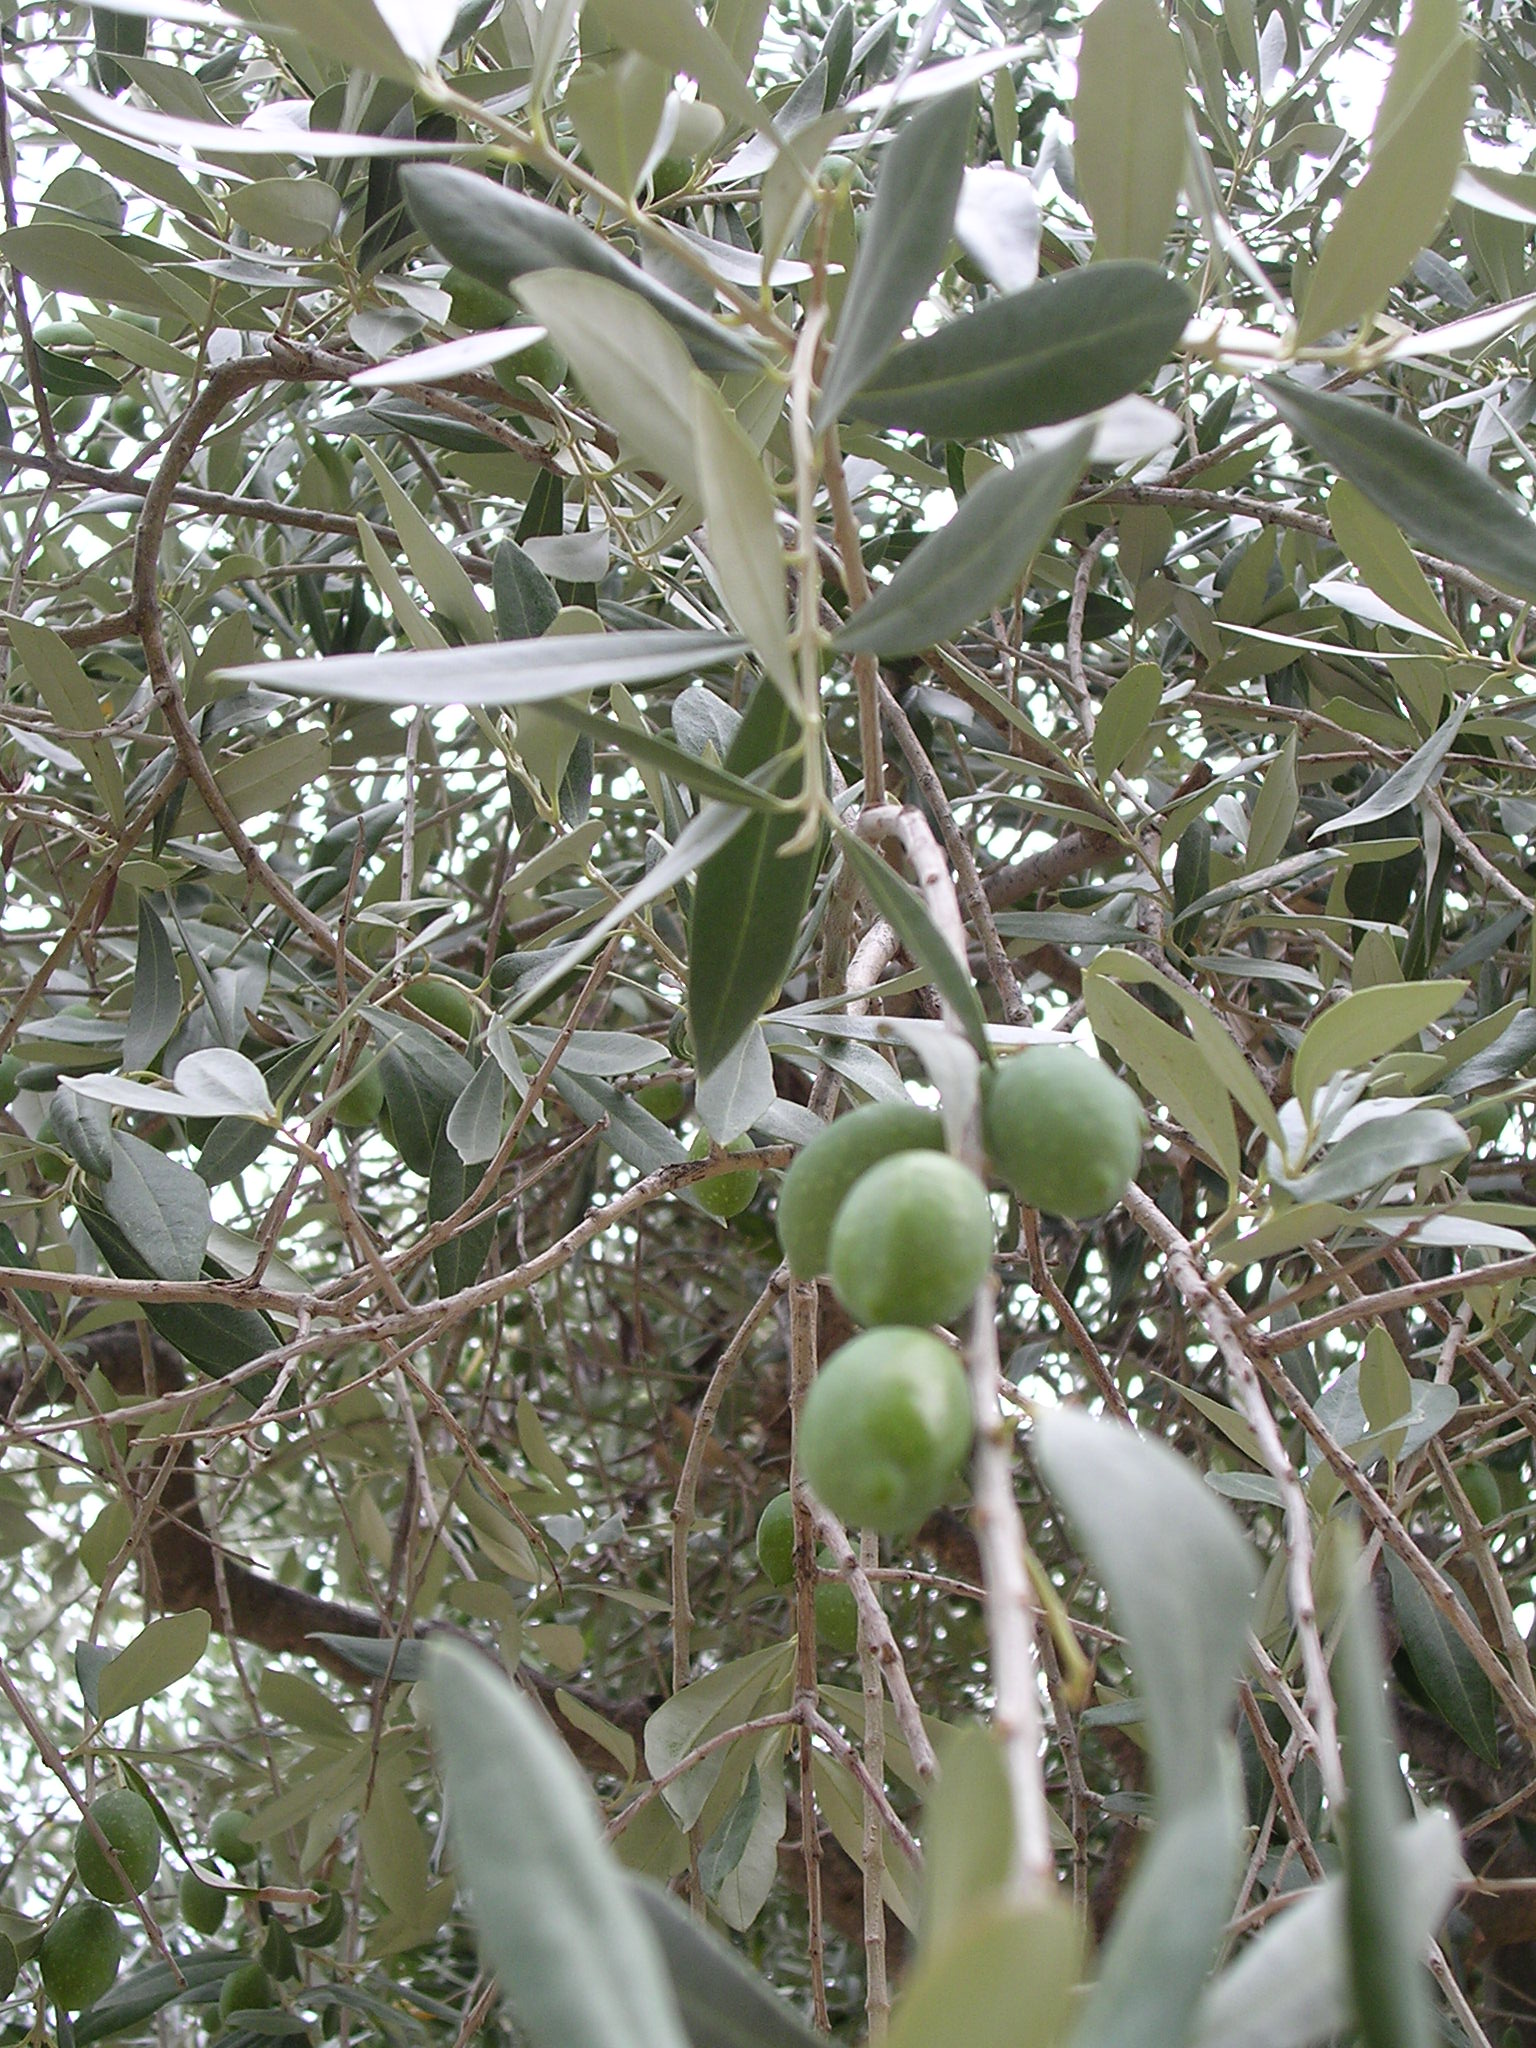 Olivenzweige mit reifen Oliven